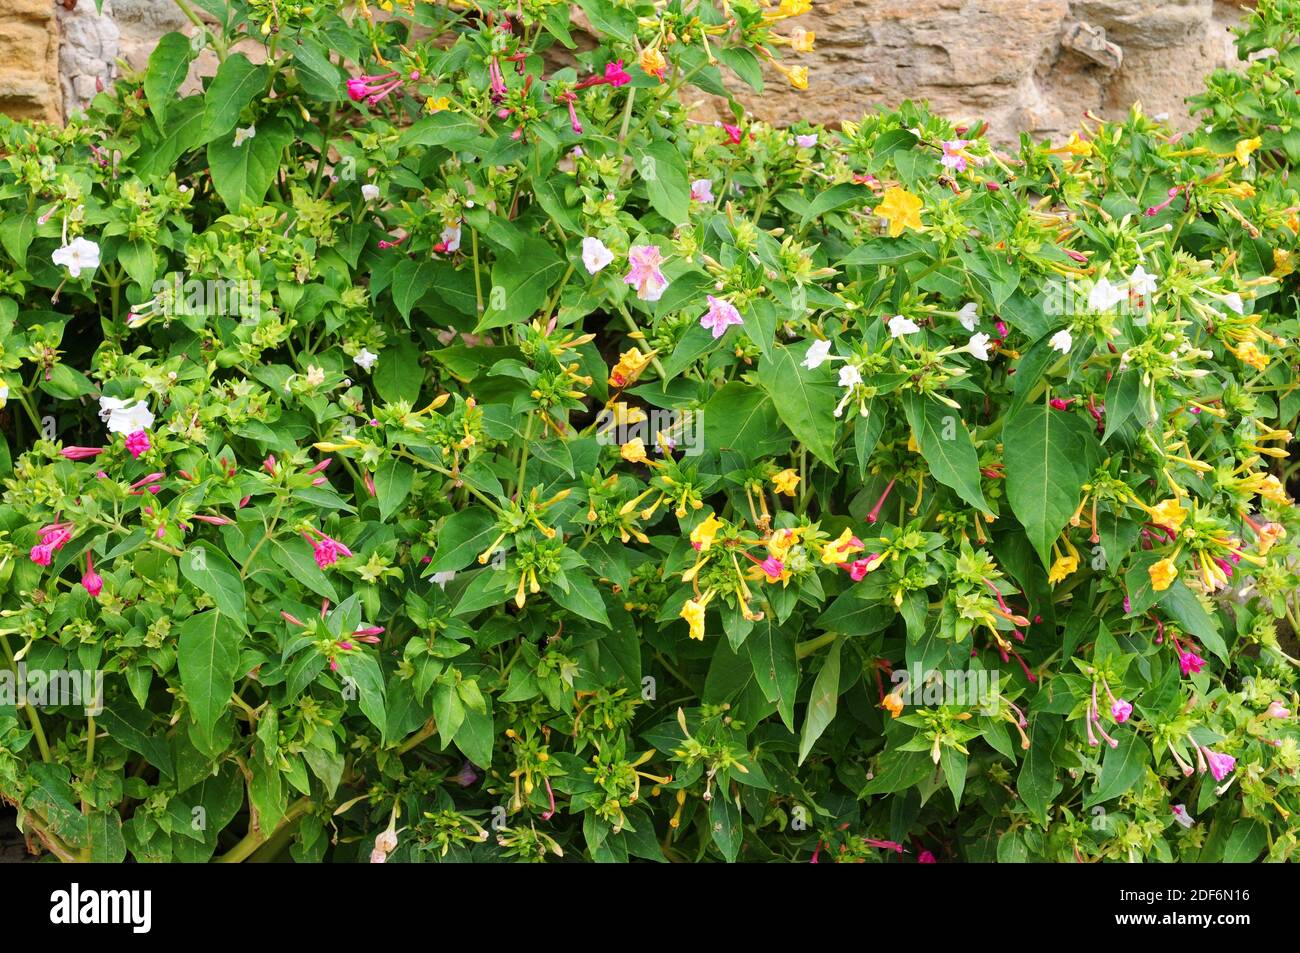 Marvel of Peru oder Four-Uhr-Blume (Mirabilis jalapa) ist eine mehrjährige Pflanze mit bunten Blüten aus dem tropischen Südamerika. Stockfoto